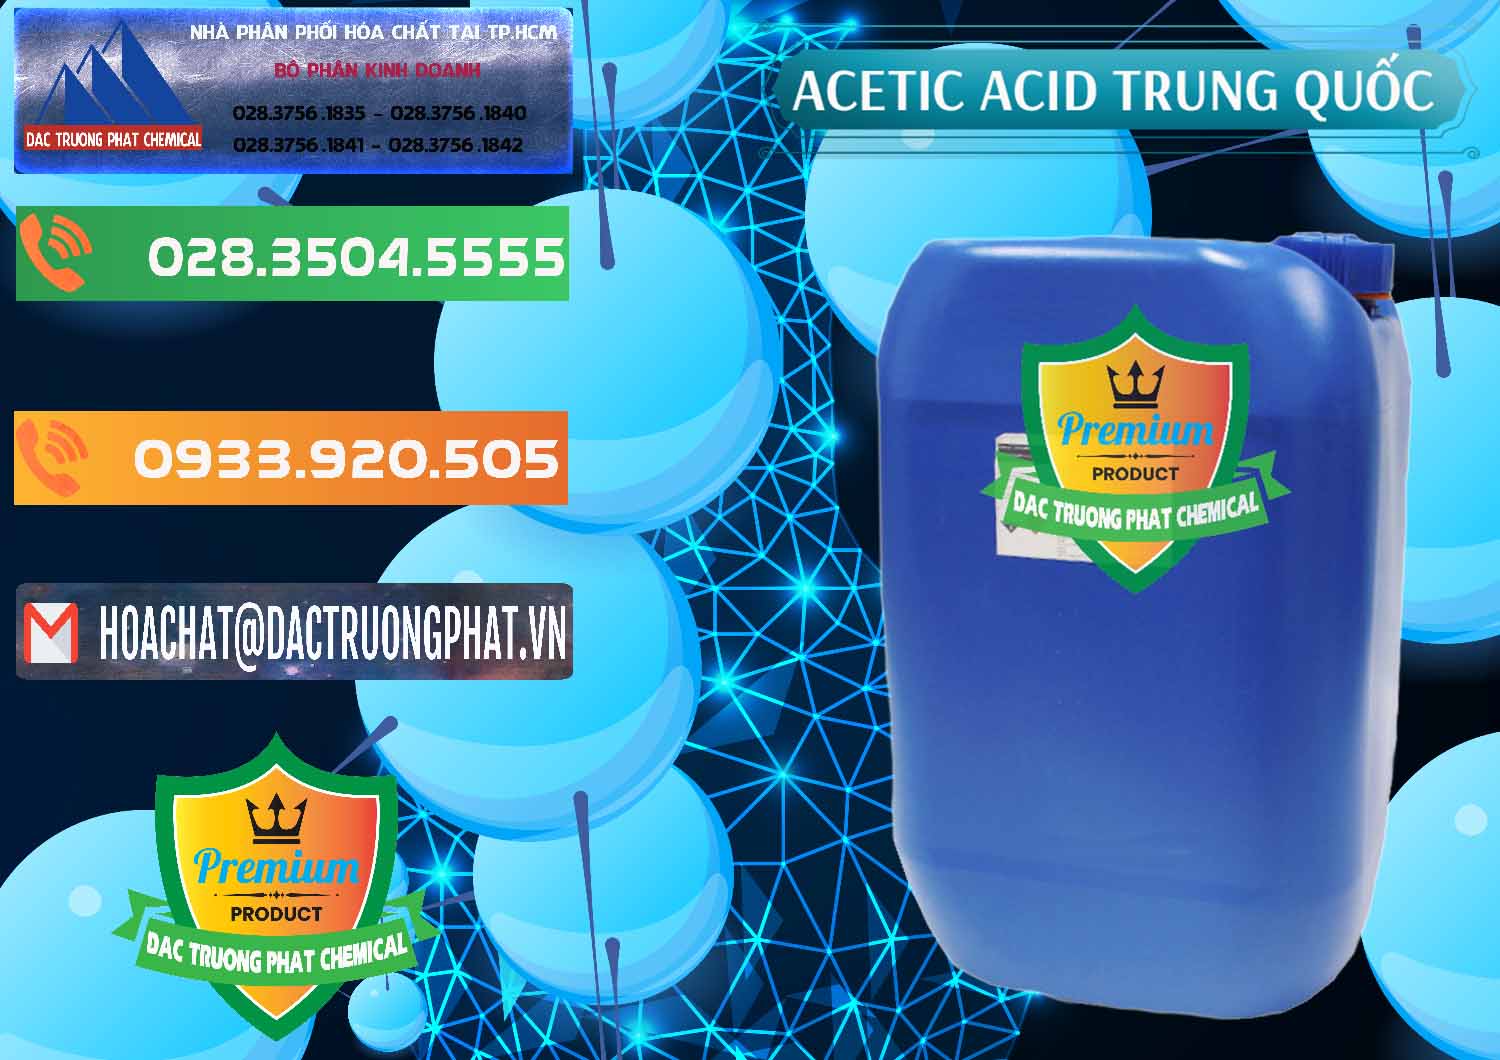 Chuyên bán & phân phối Acetic Acid – Axit Acetic Trung Quốc China - 0358 - Công ty chuyên nhập khẩu - phân phối hóa chất tại TP.HCM - hoachatxulynuoc.com.vn